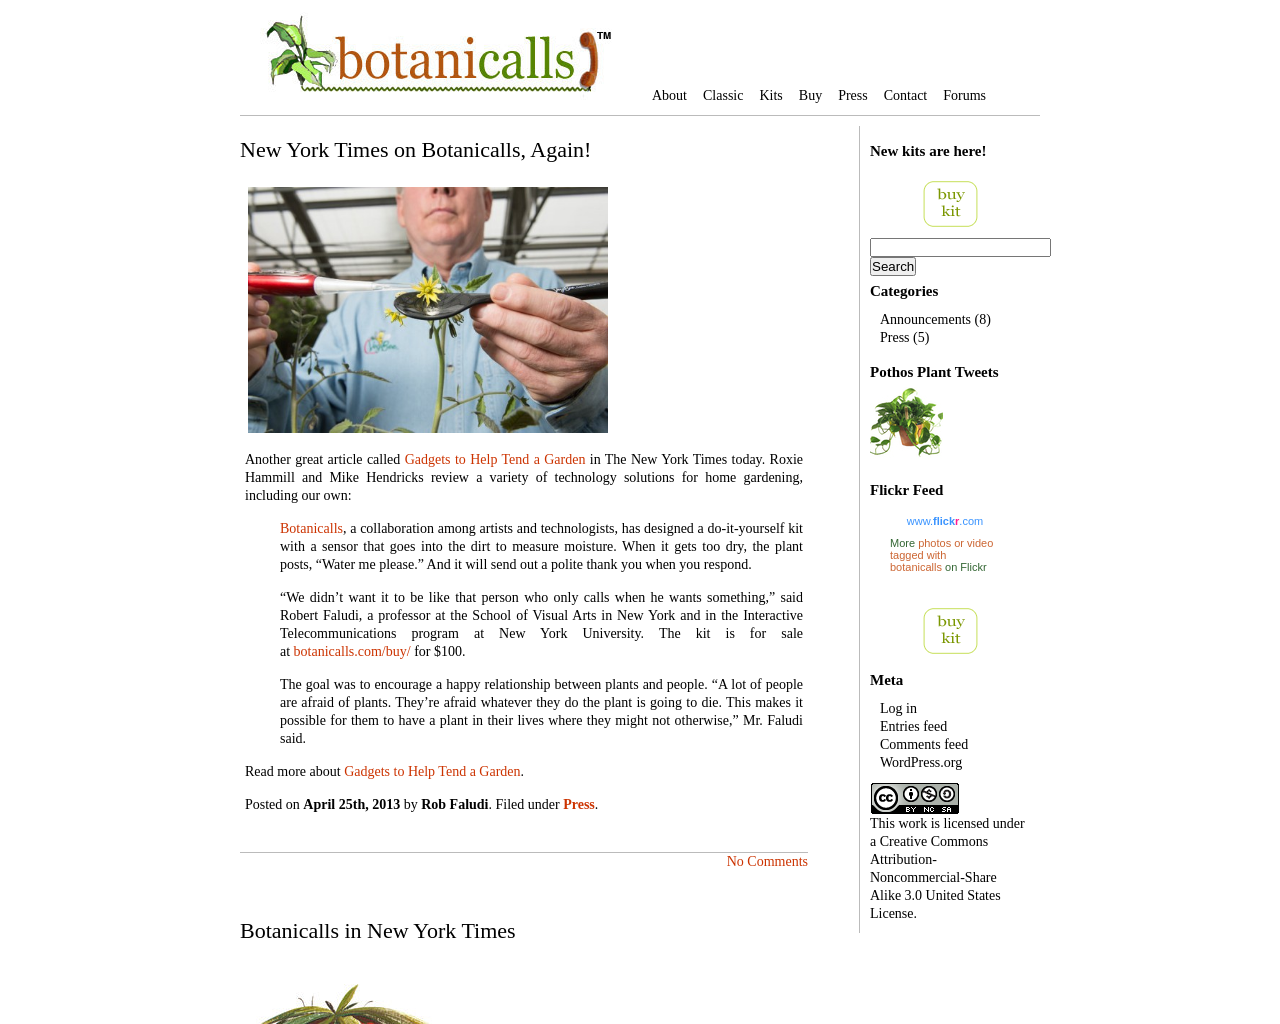 botanicalls.com